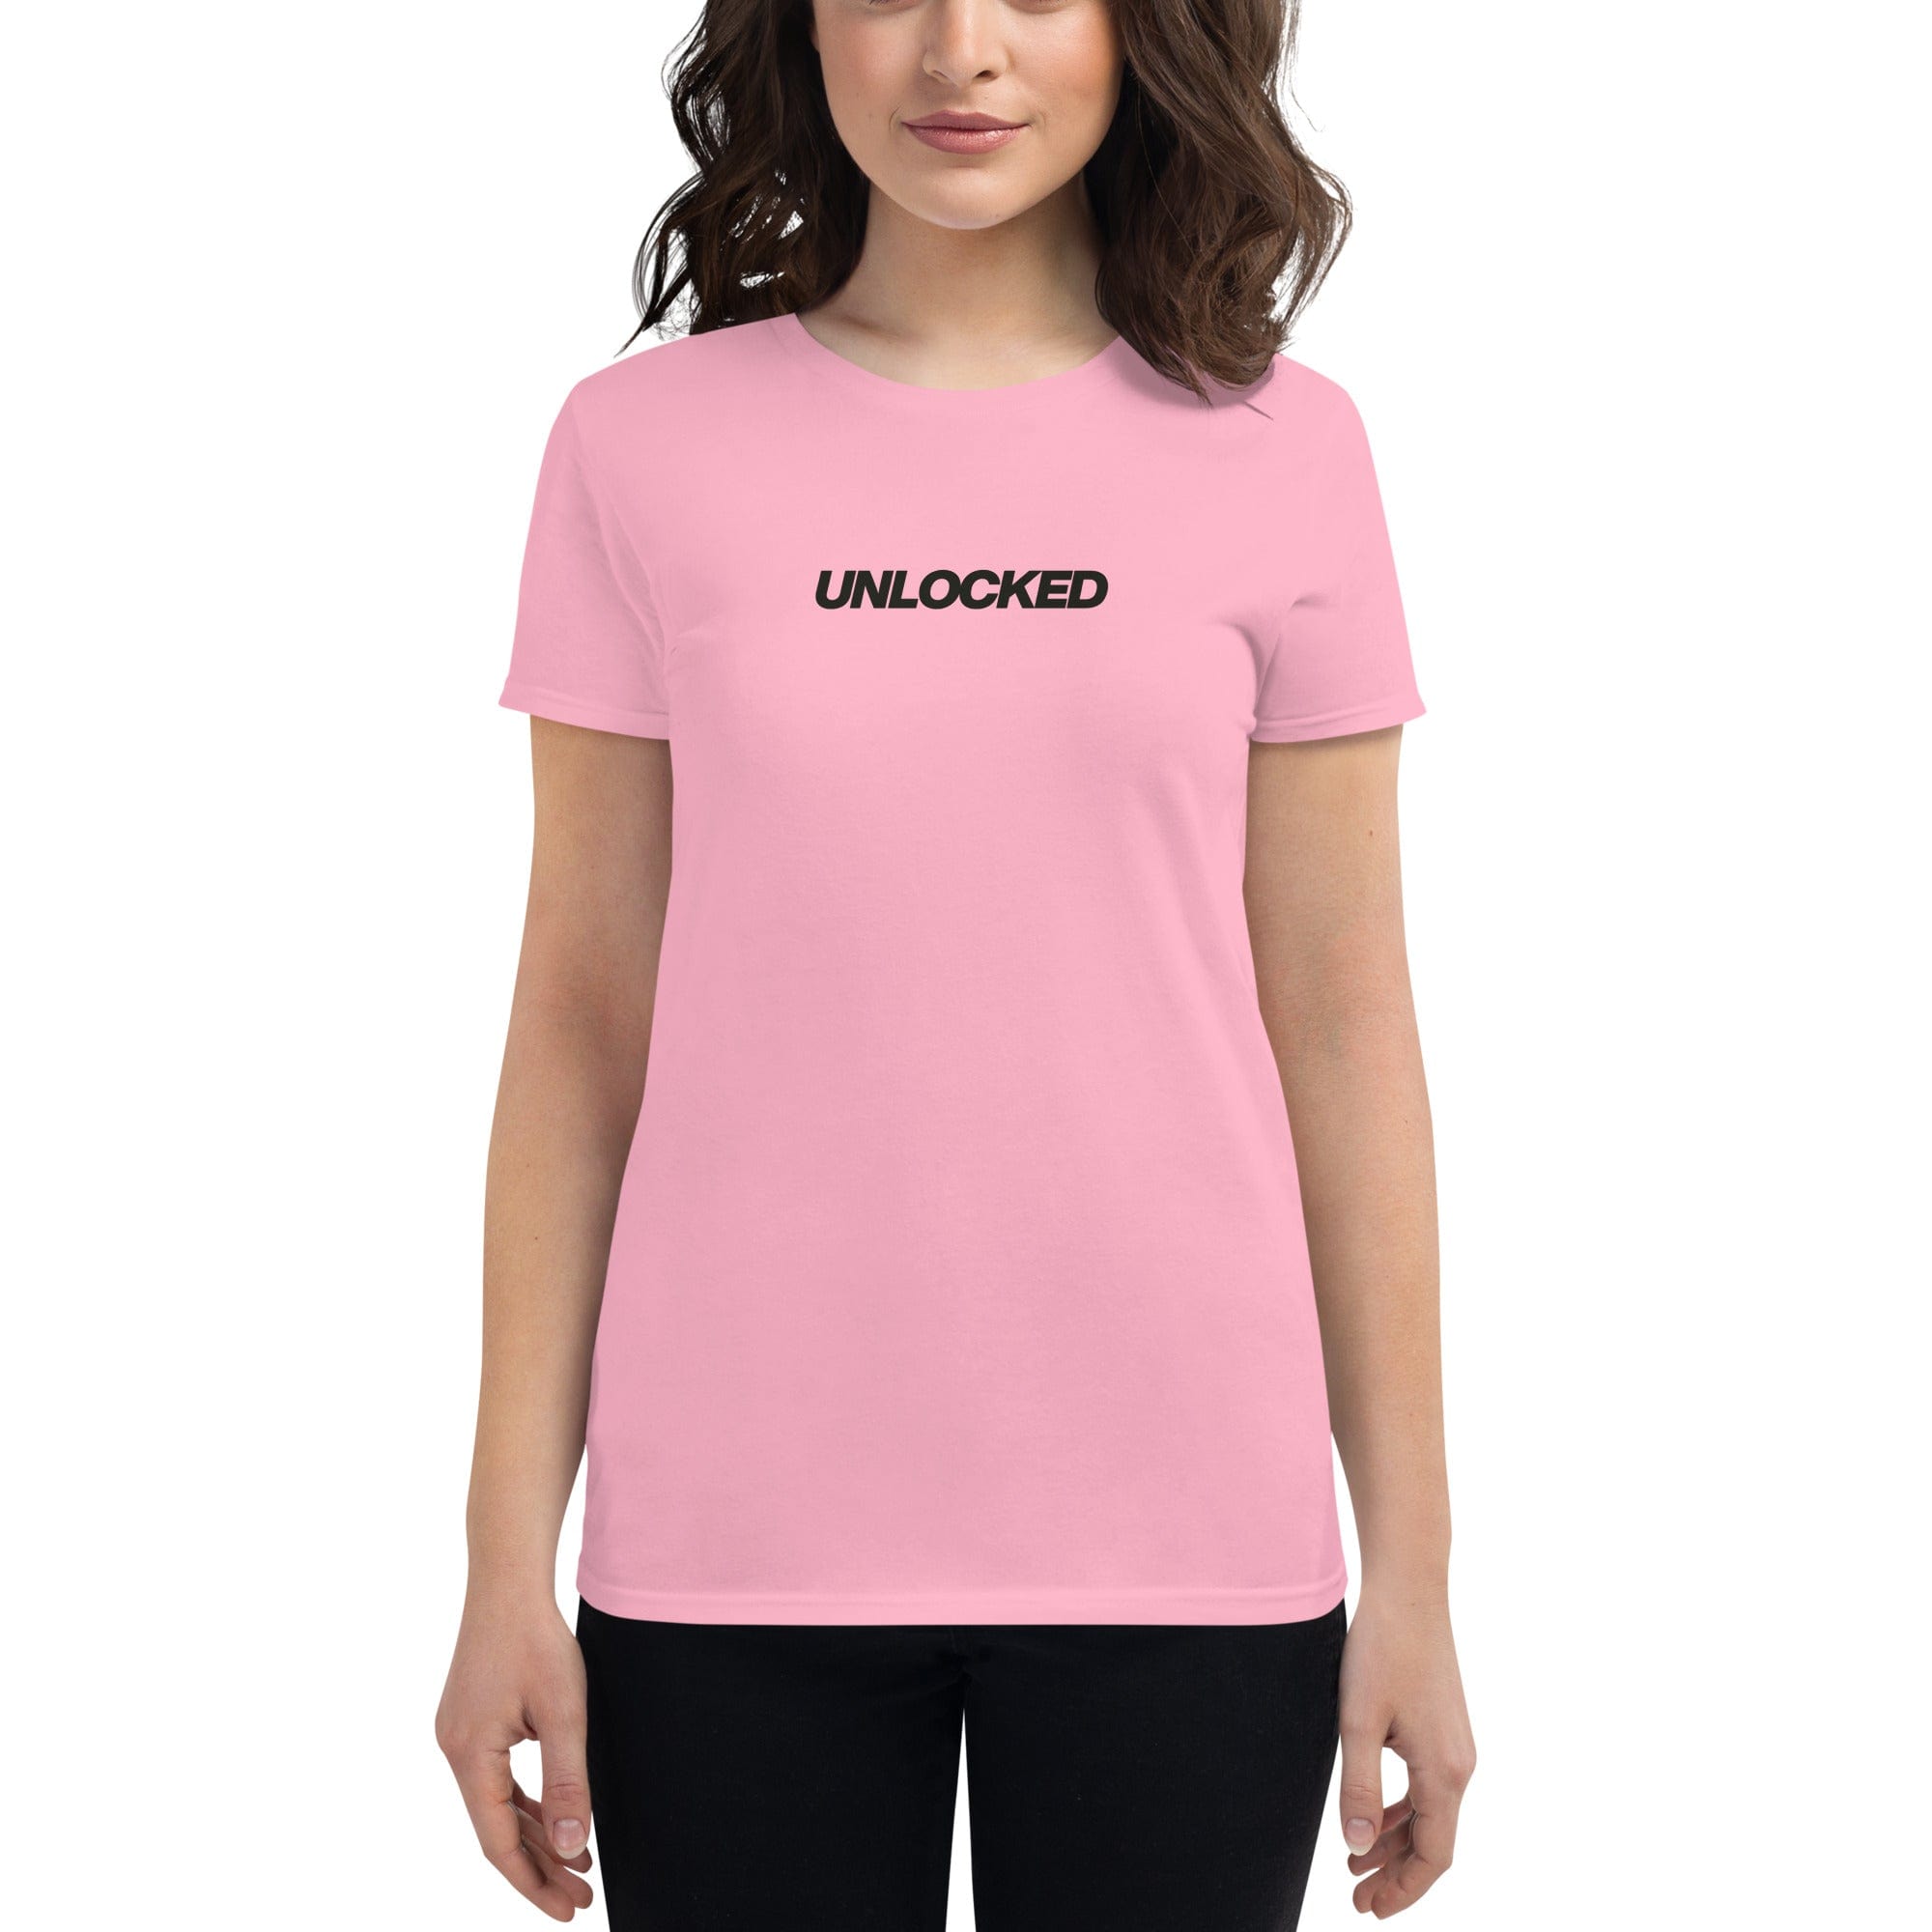 Unlocked Women's Short-Sleeve T-shirt Charity Pink / S Shirts & Tops Jolly & Goode